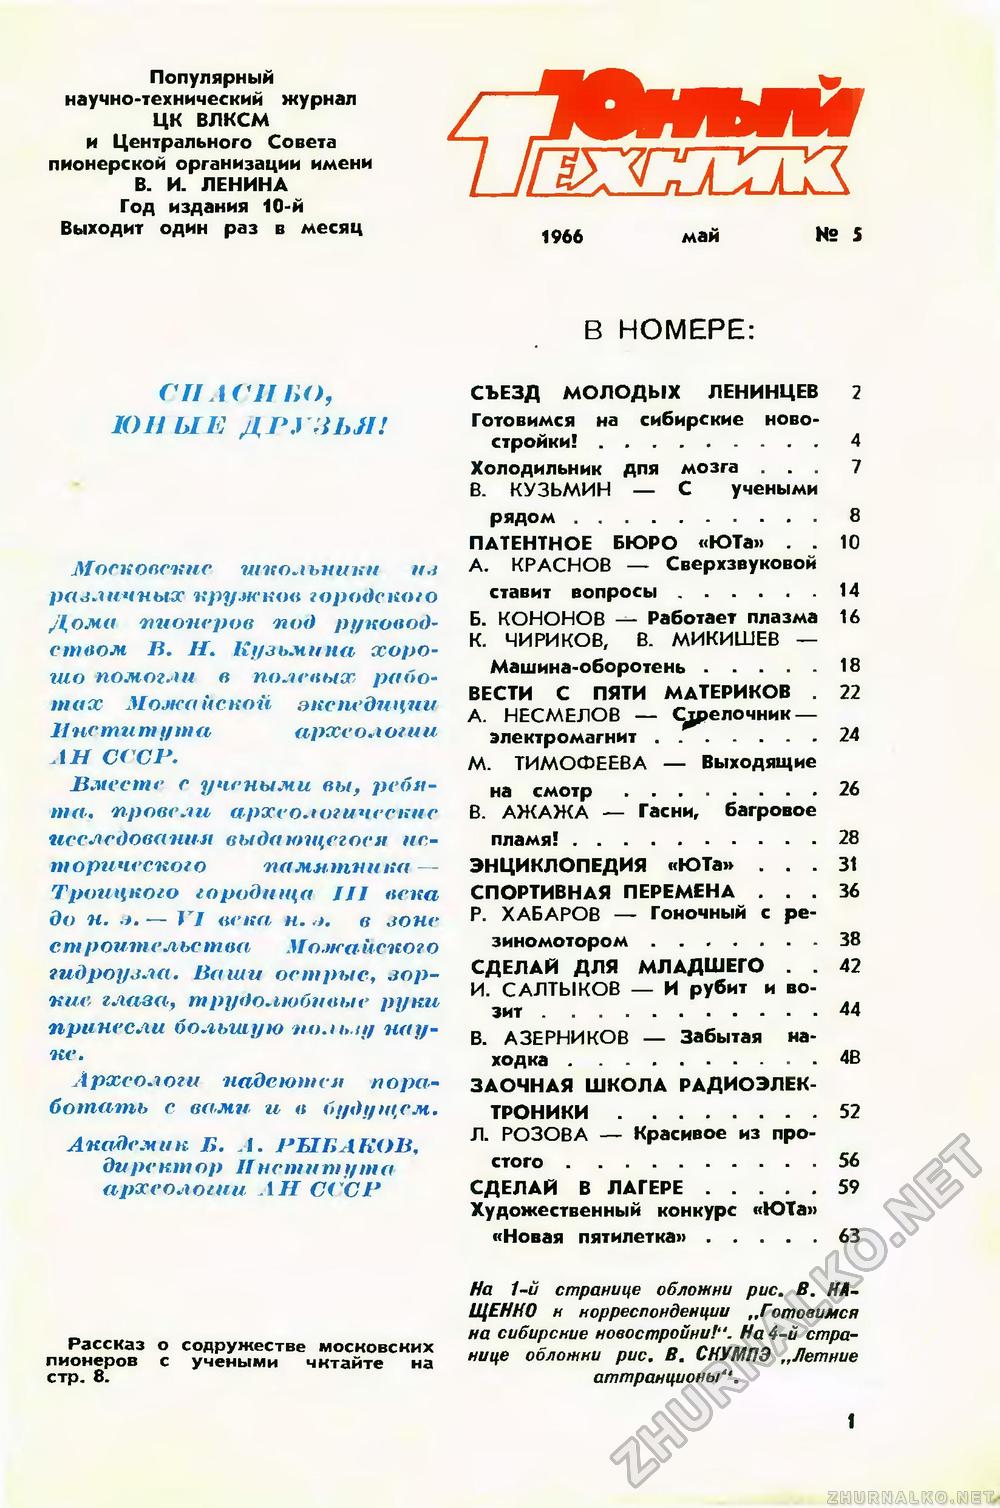   1966-05,  3